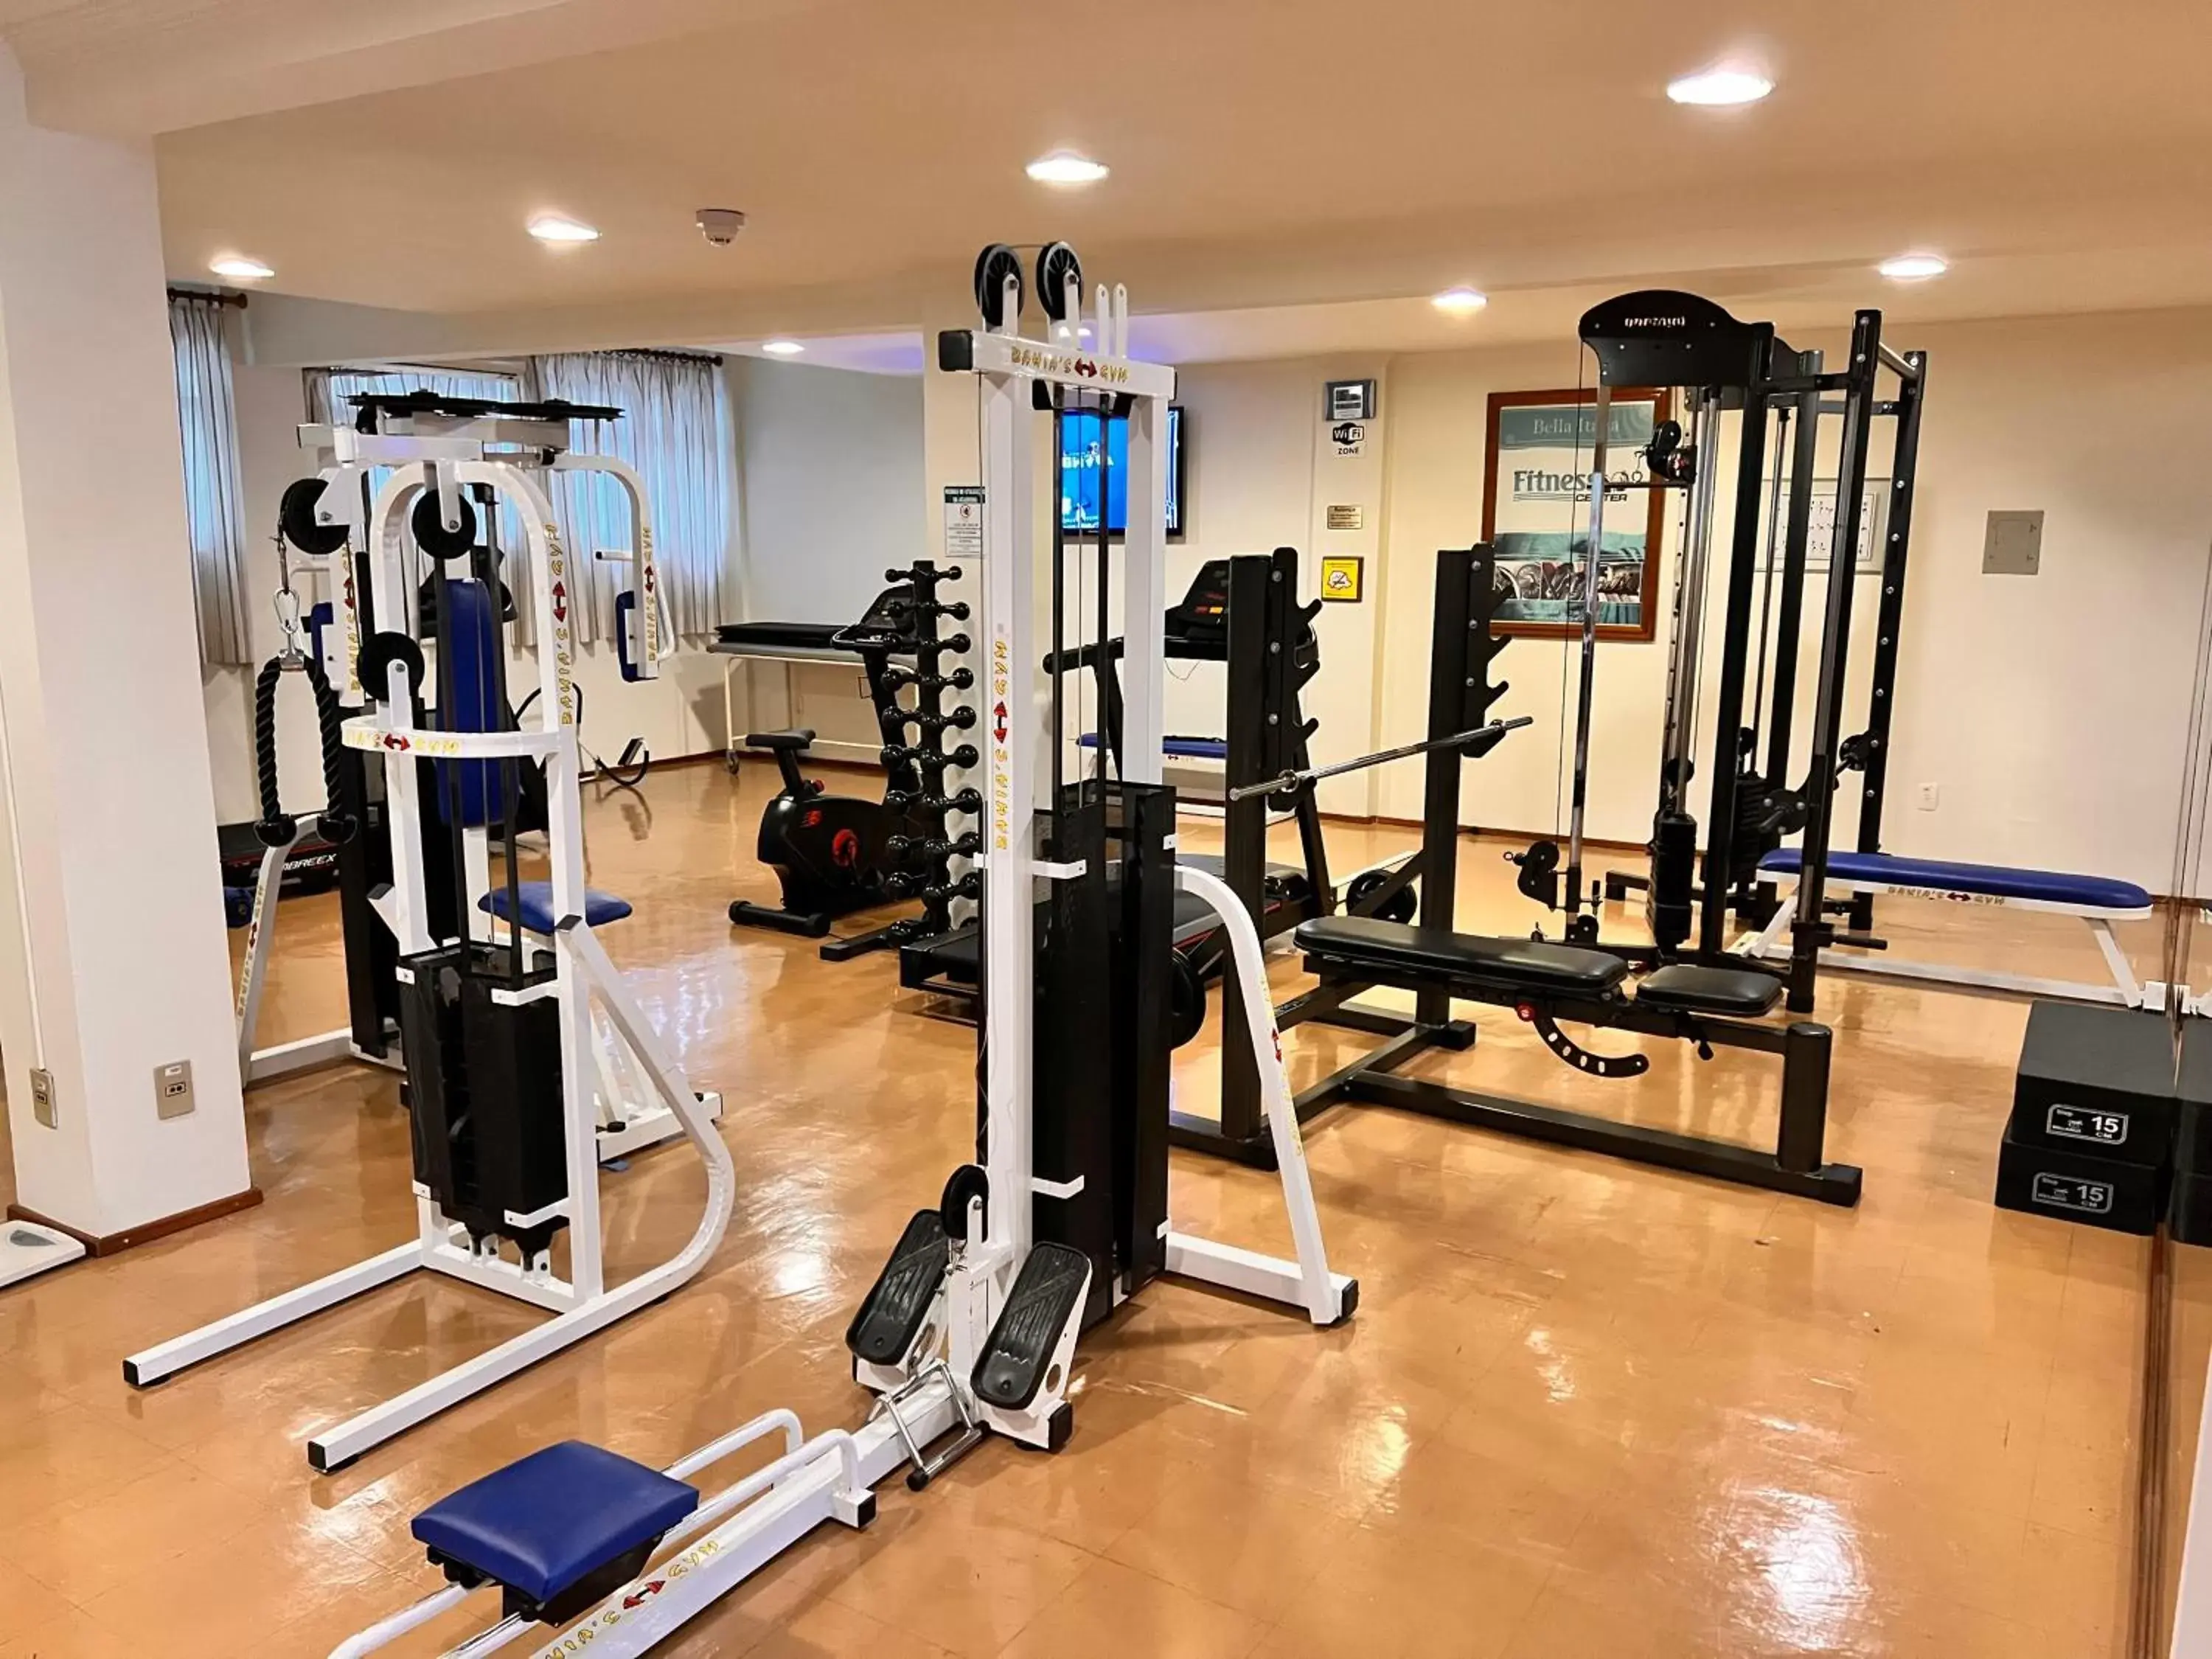 Fitness centre/facilities, Fitness Center/Facilities in Hotel Bella Italia